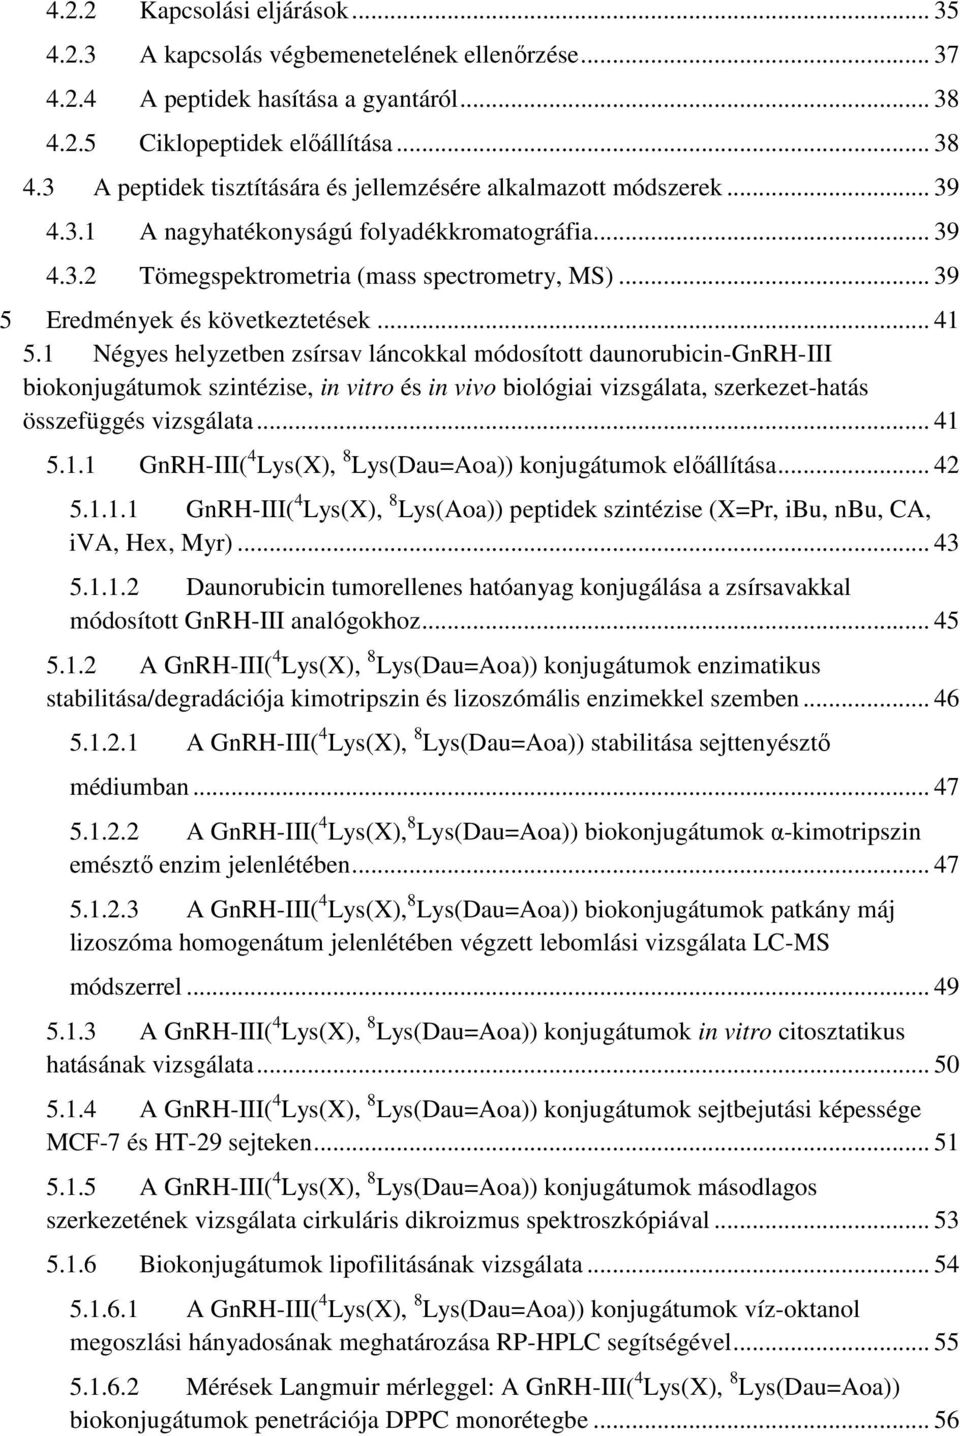 1 Négyes helyzetben zsírsav láncokkal módosított daunorubicin-gnrh-iii biokonjugátumok szintézise, in vitro és in vivo biológiai vizsgálata, szerkezet-hatás összefüggés vizsgálata... 41 5.1.1 GnRH-III( 4 Lys(X), 8 Lys(Dau=Aoa)) konjugátumok előállítása.